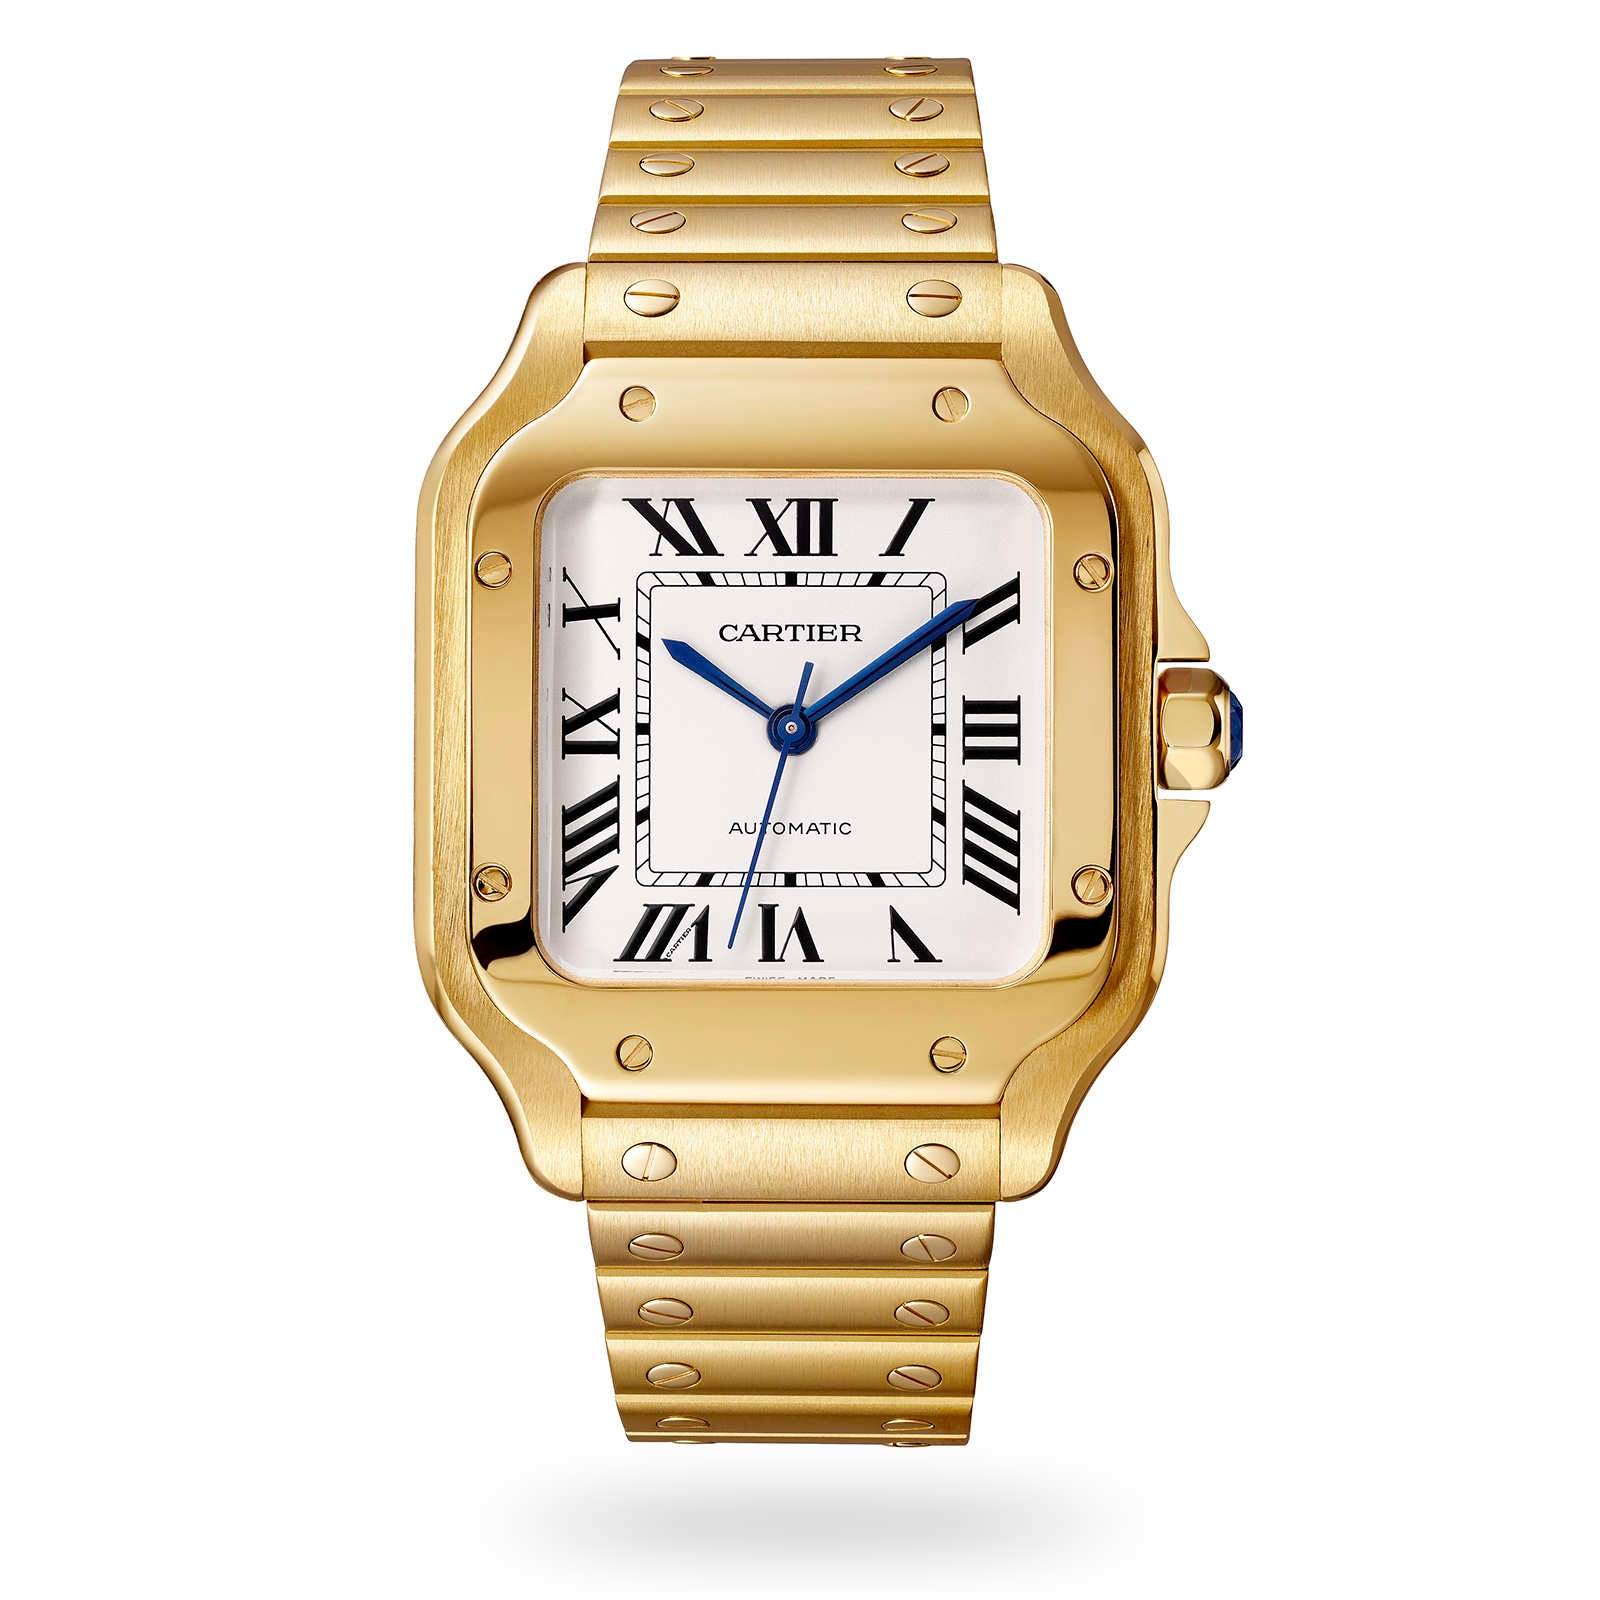 Tank de Cartier watches - all watch models - Cartier